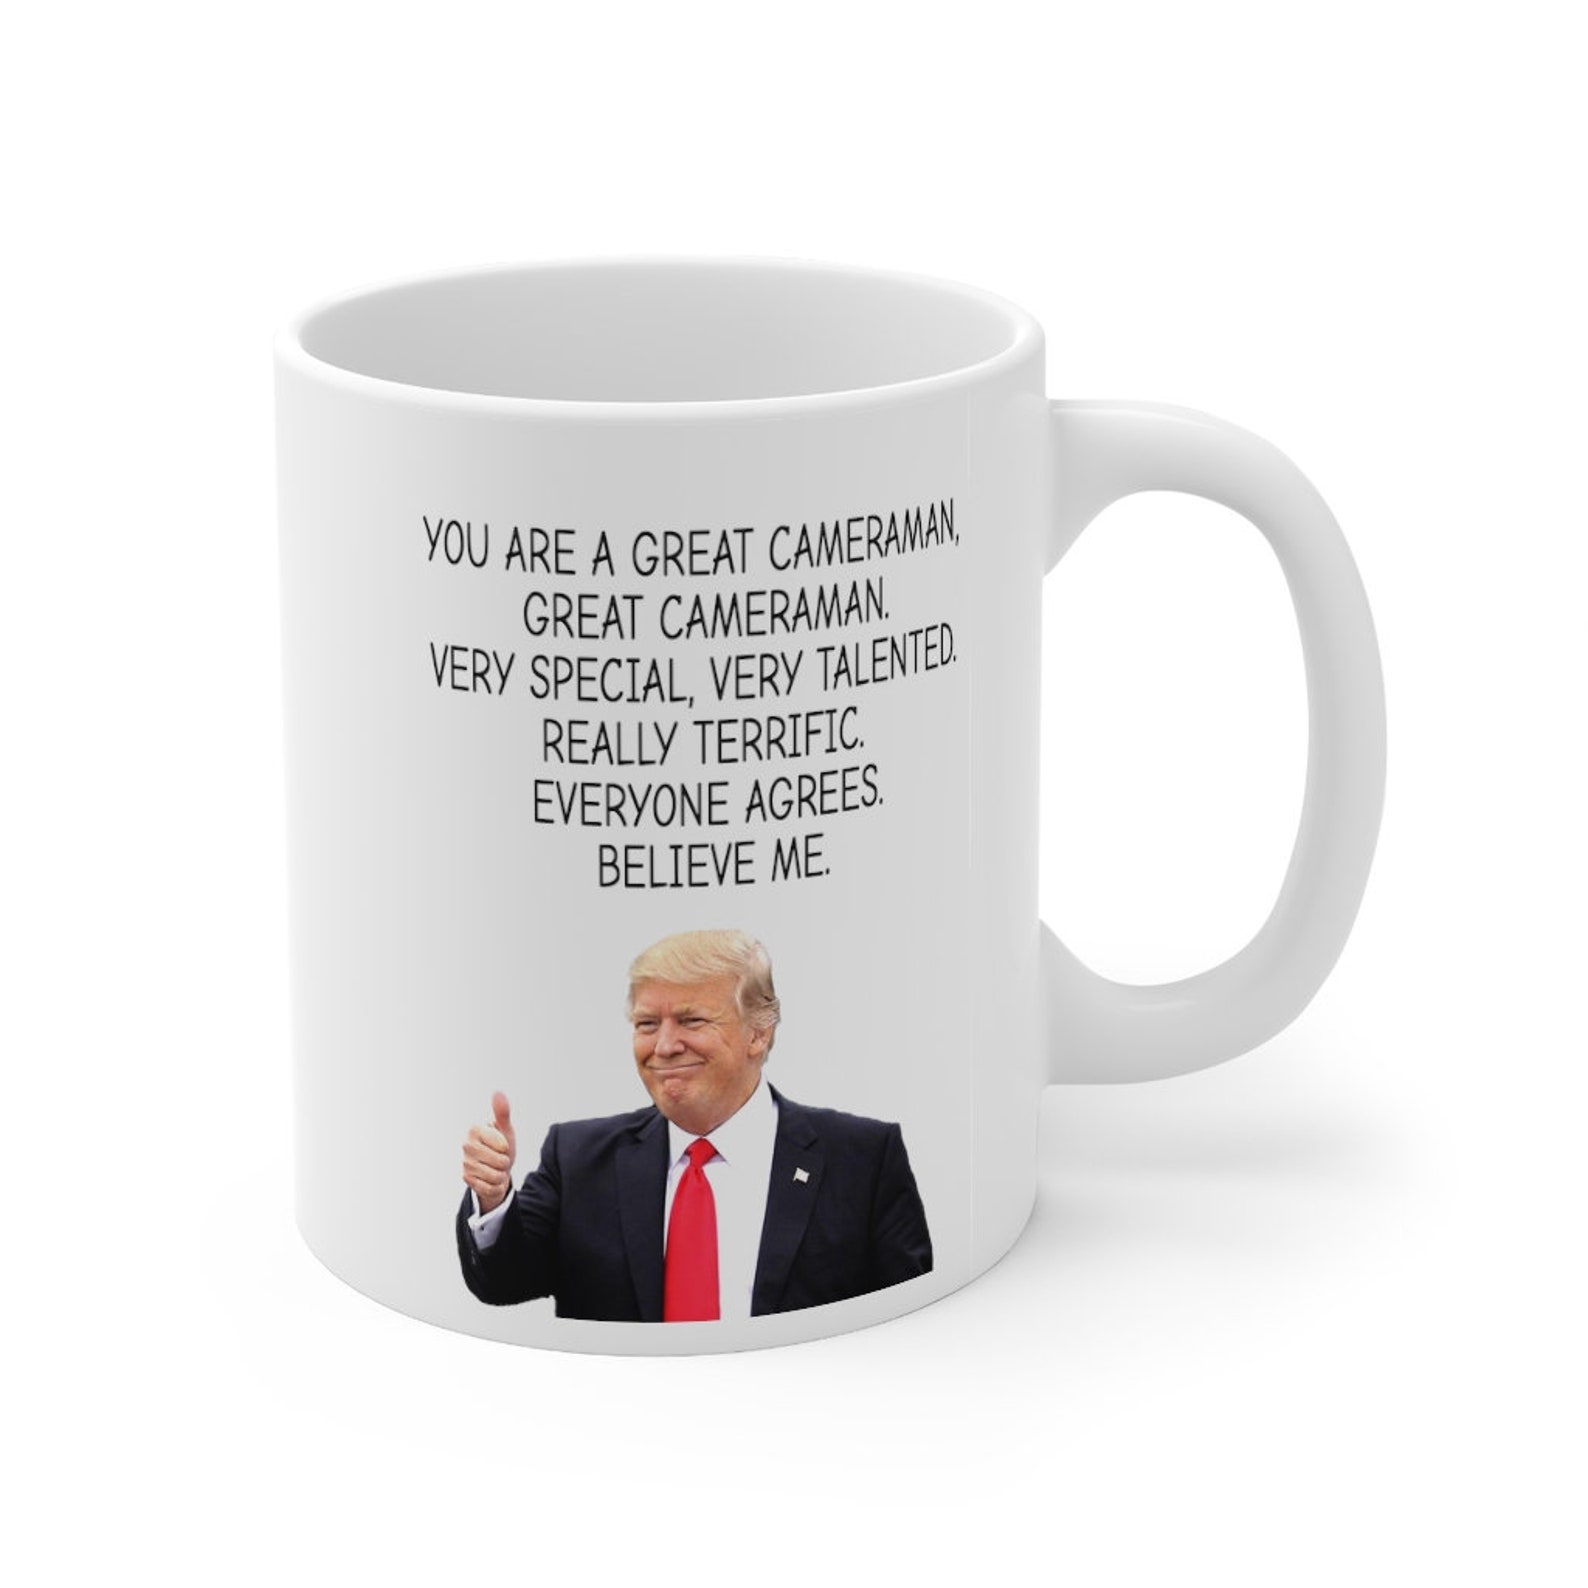 Cameraman mug Cameraman gift funny donald trump gift mug for | Etsy